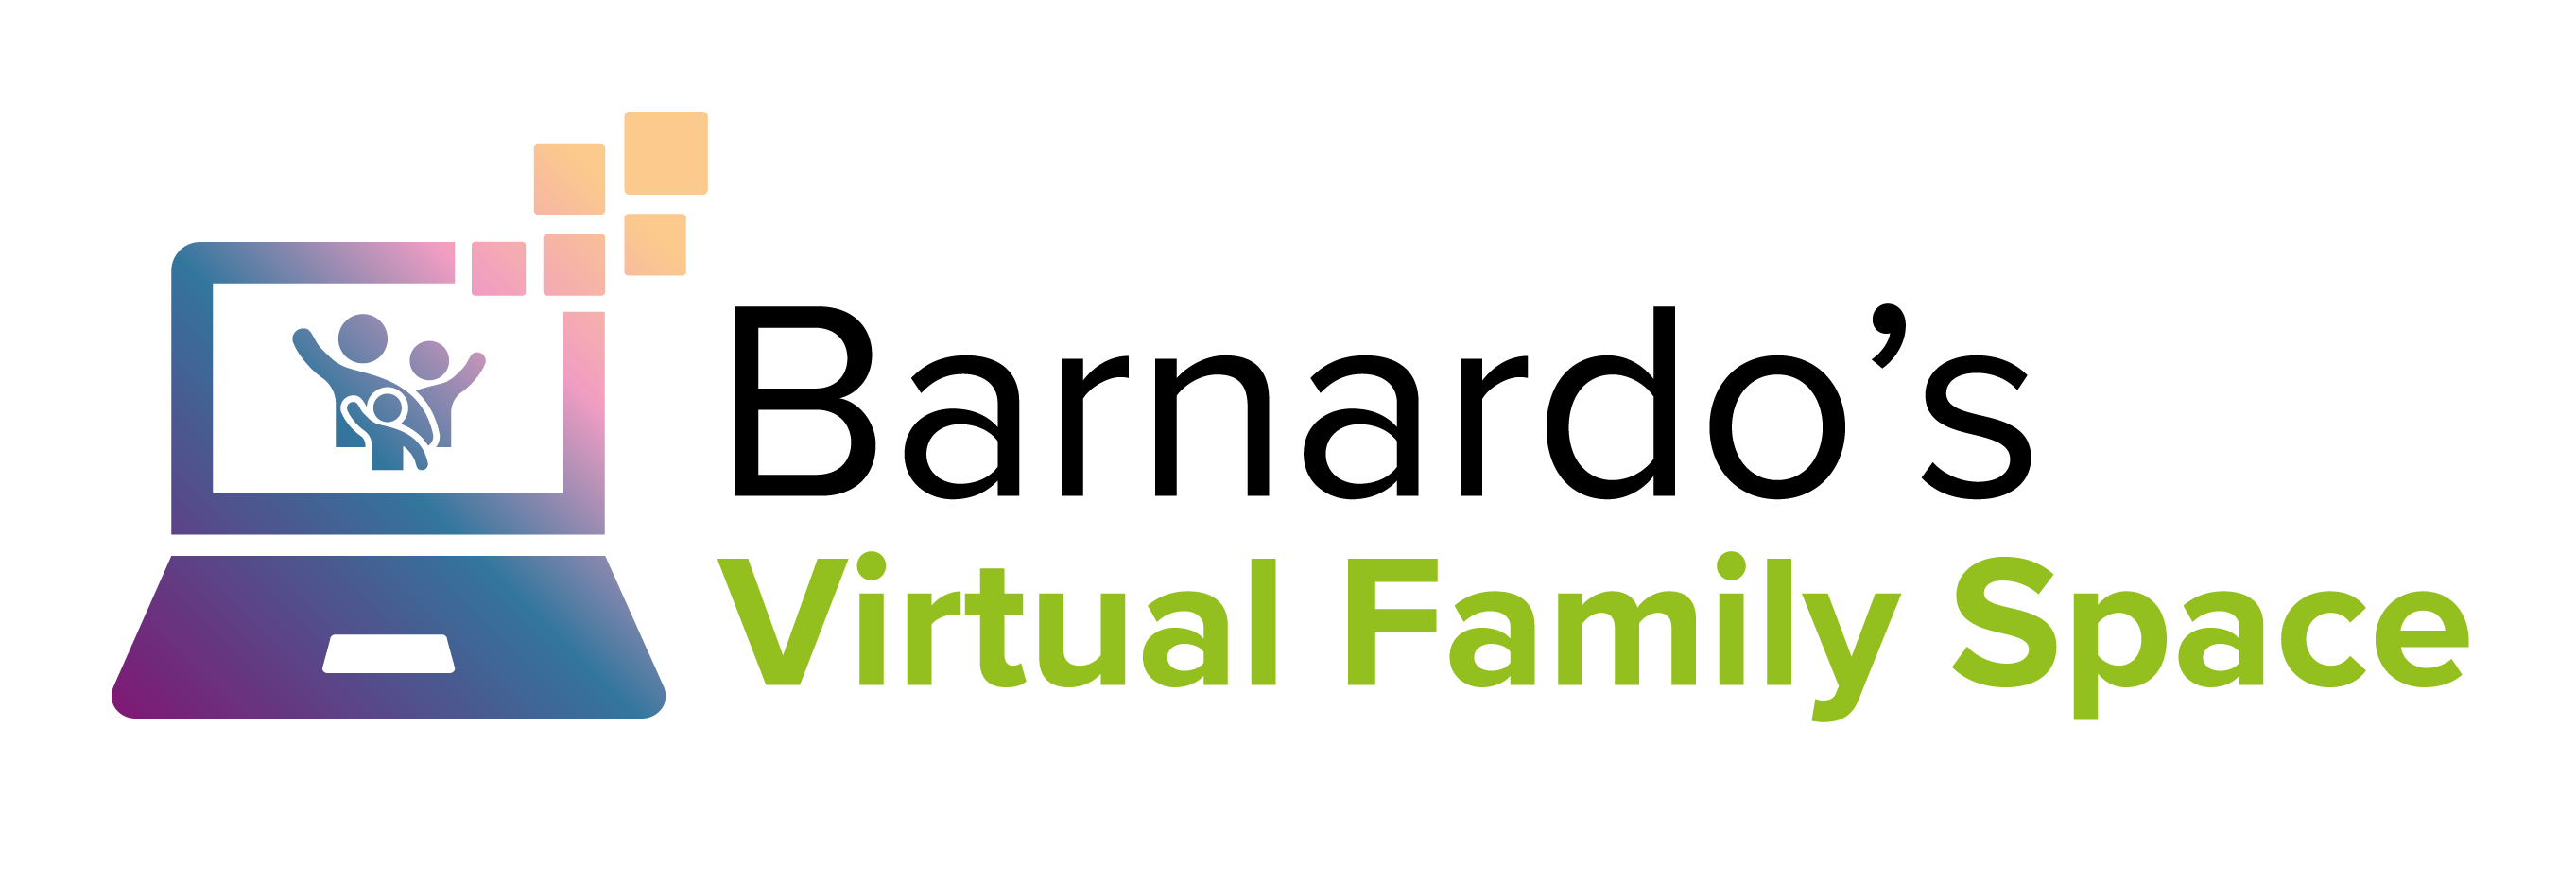 Barnardo's Virtual Family Space Logo